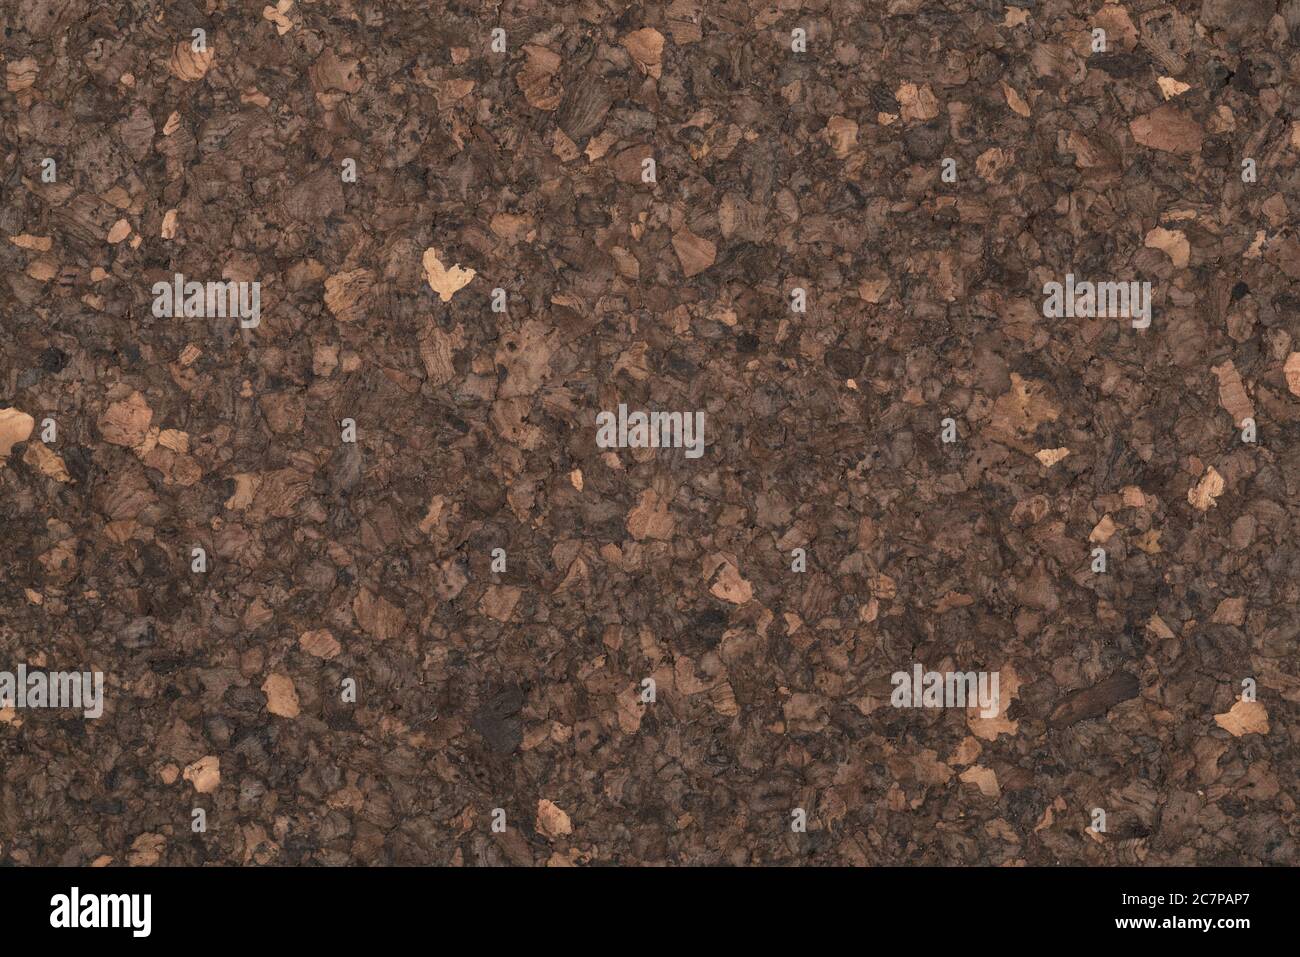 Texture of dark cork surface Stock Photo